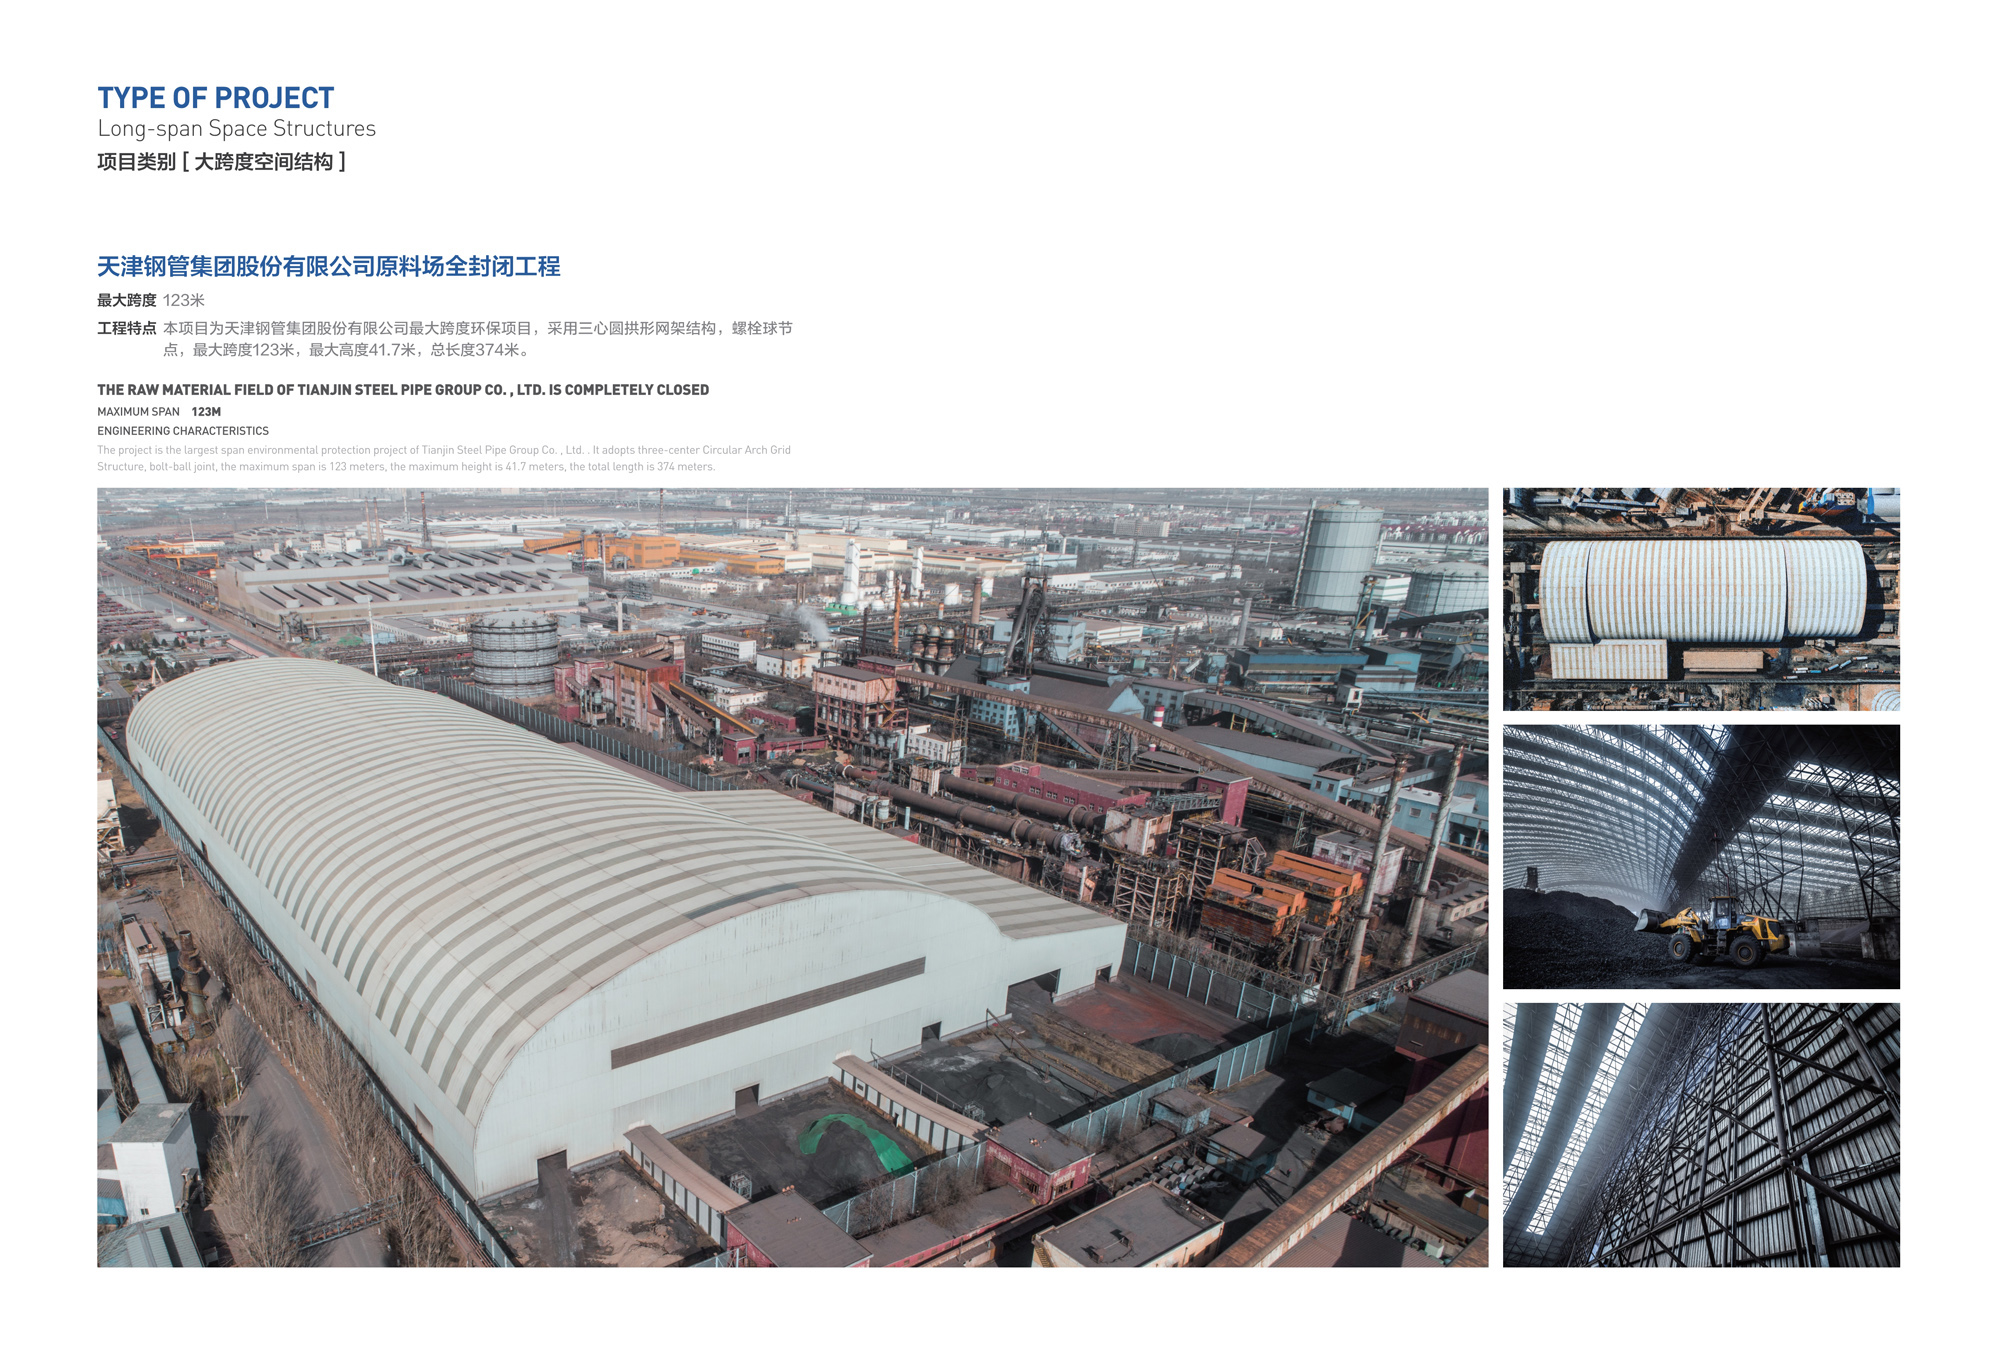 天津钢管集团股份有限公司原料场全封闭工程